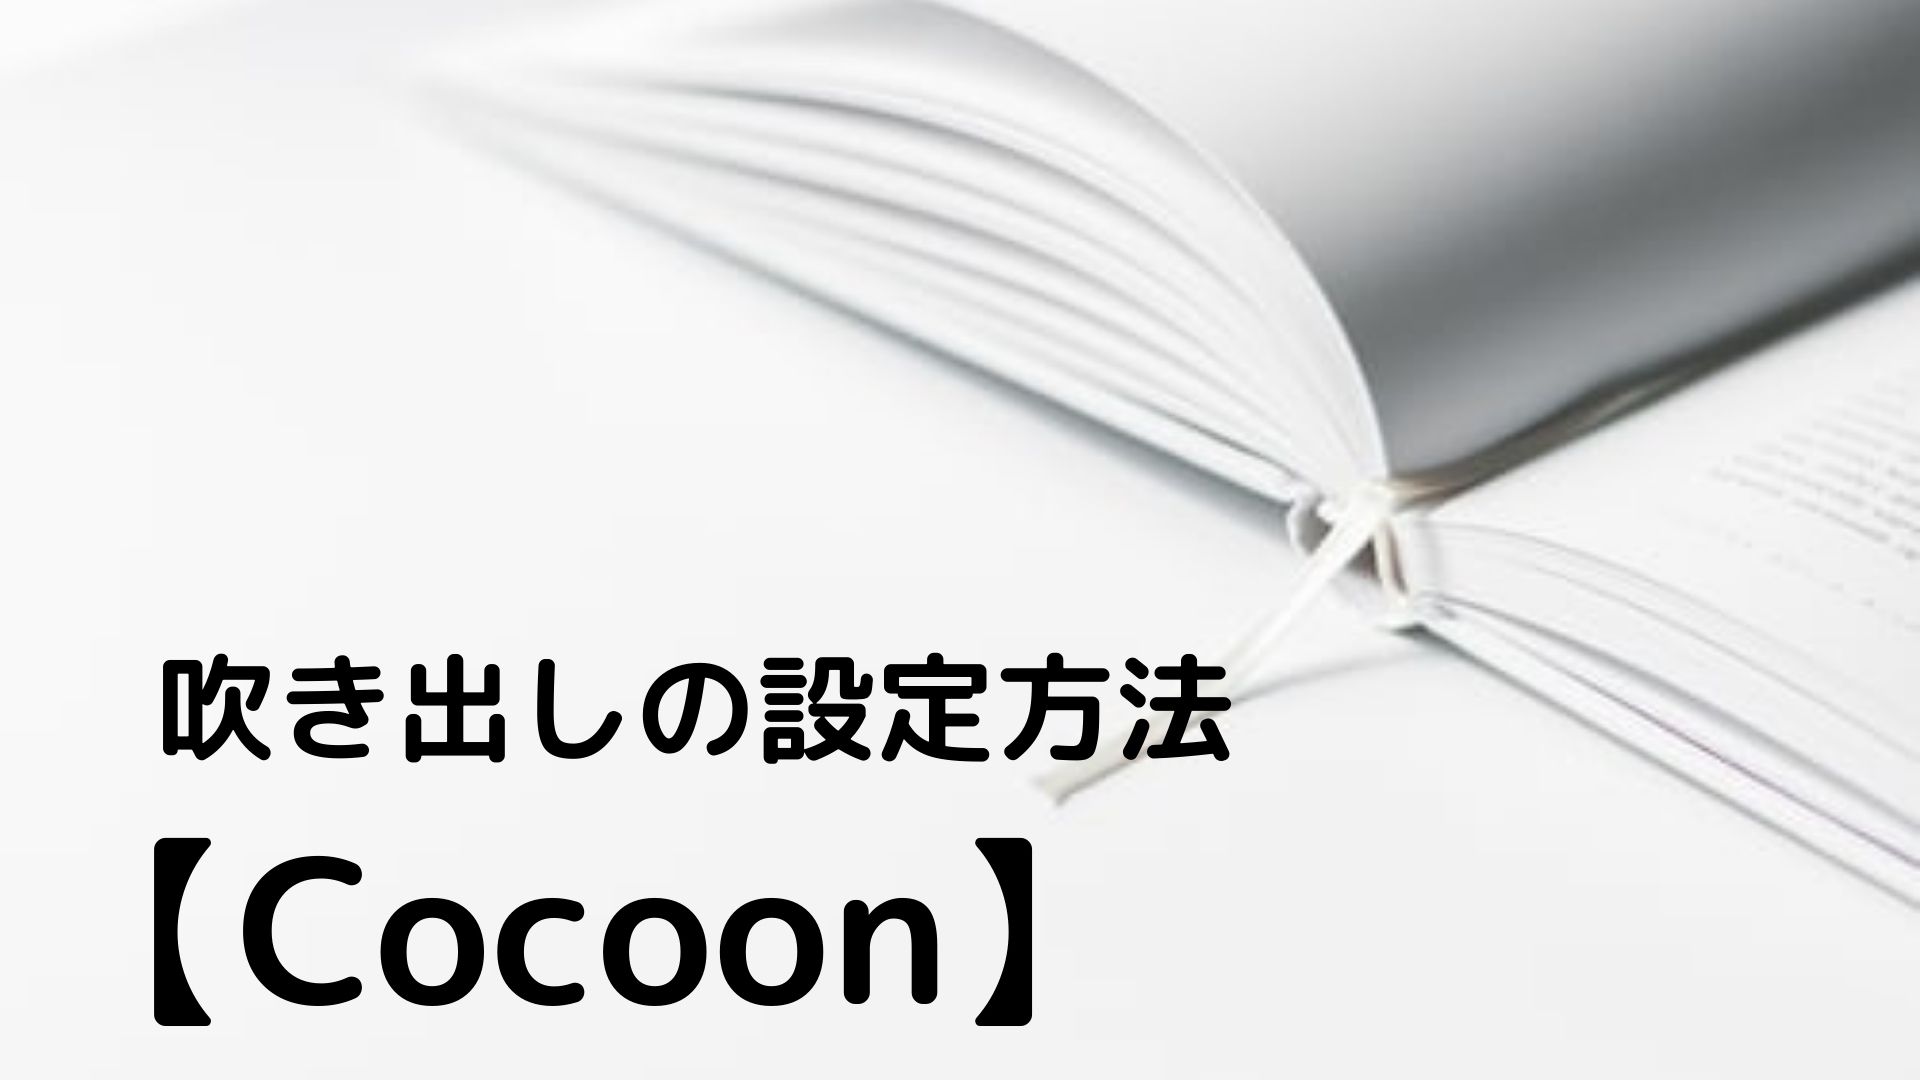 【Cocoon】吹き出しの設定方法